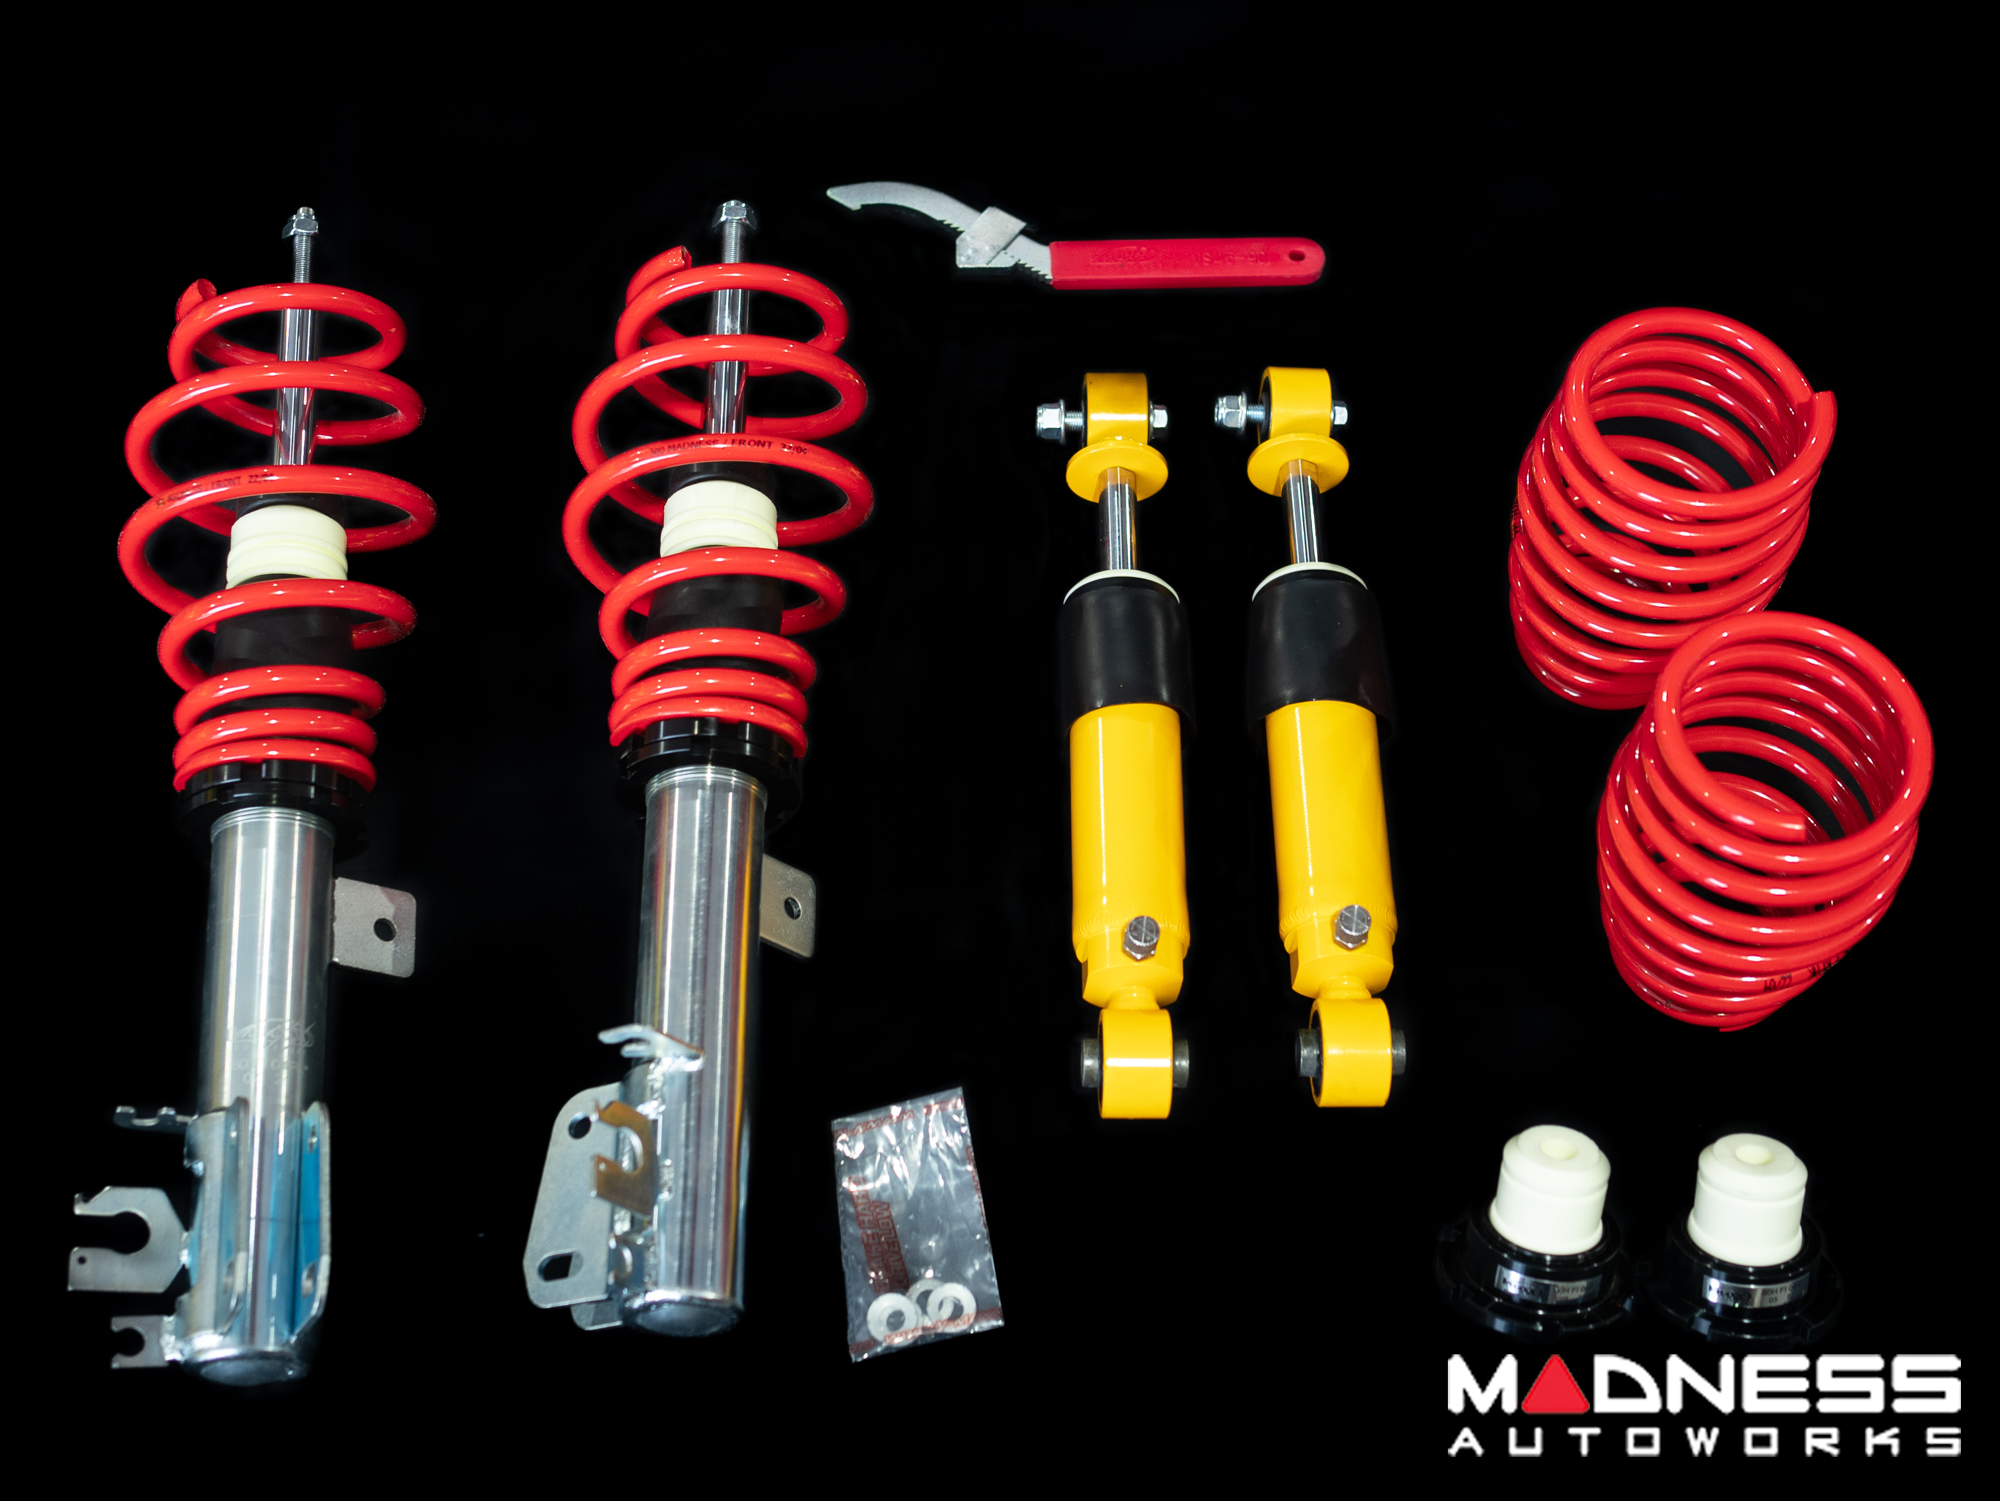 V-Maxx, Big Brake Kits, Coilover kits